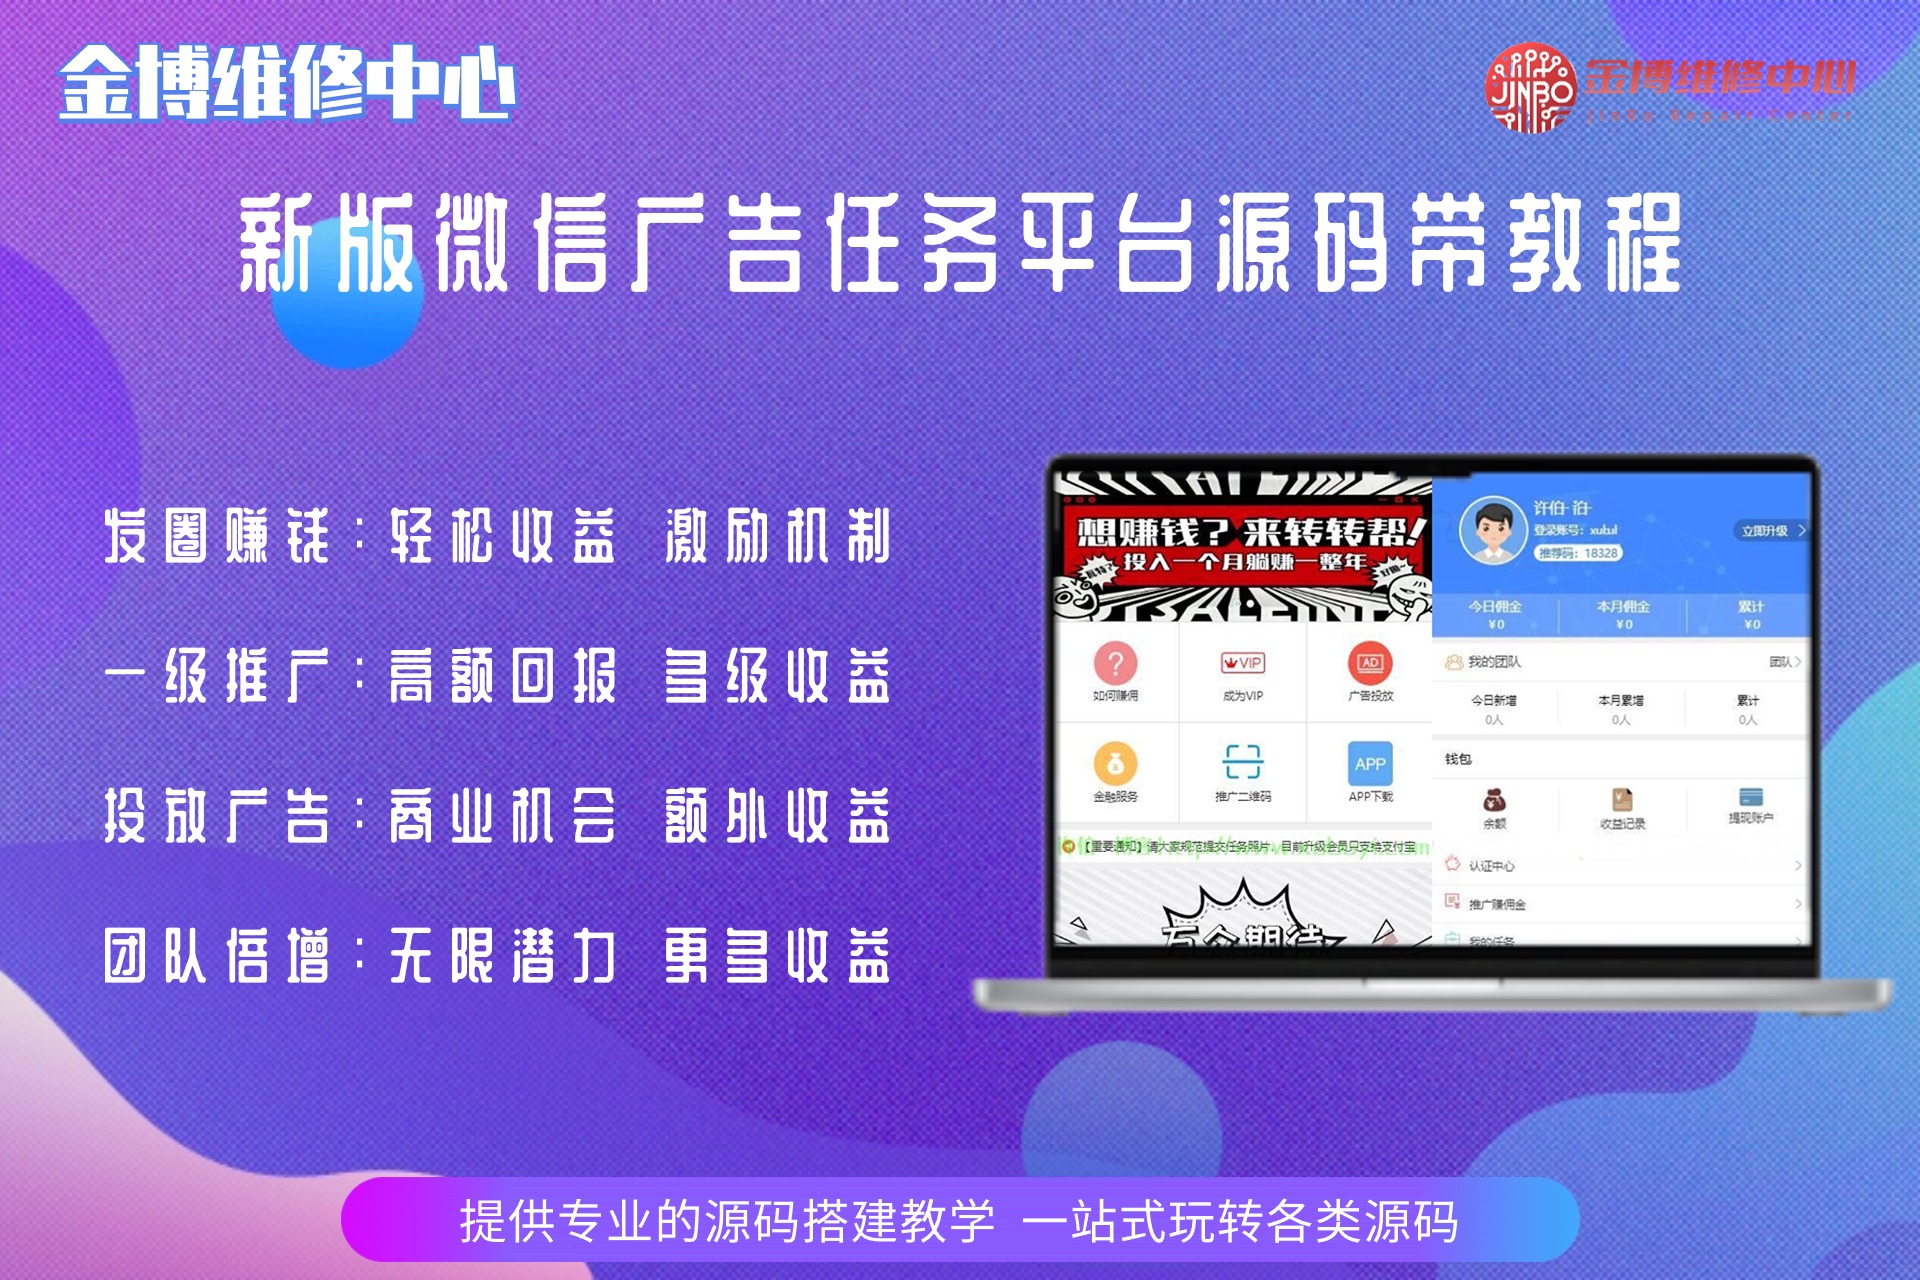 新版微信广告任务平台源码运营版带教程 B58-北京金博维修中心